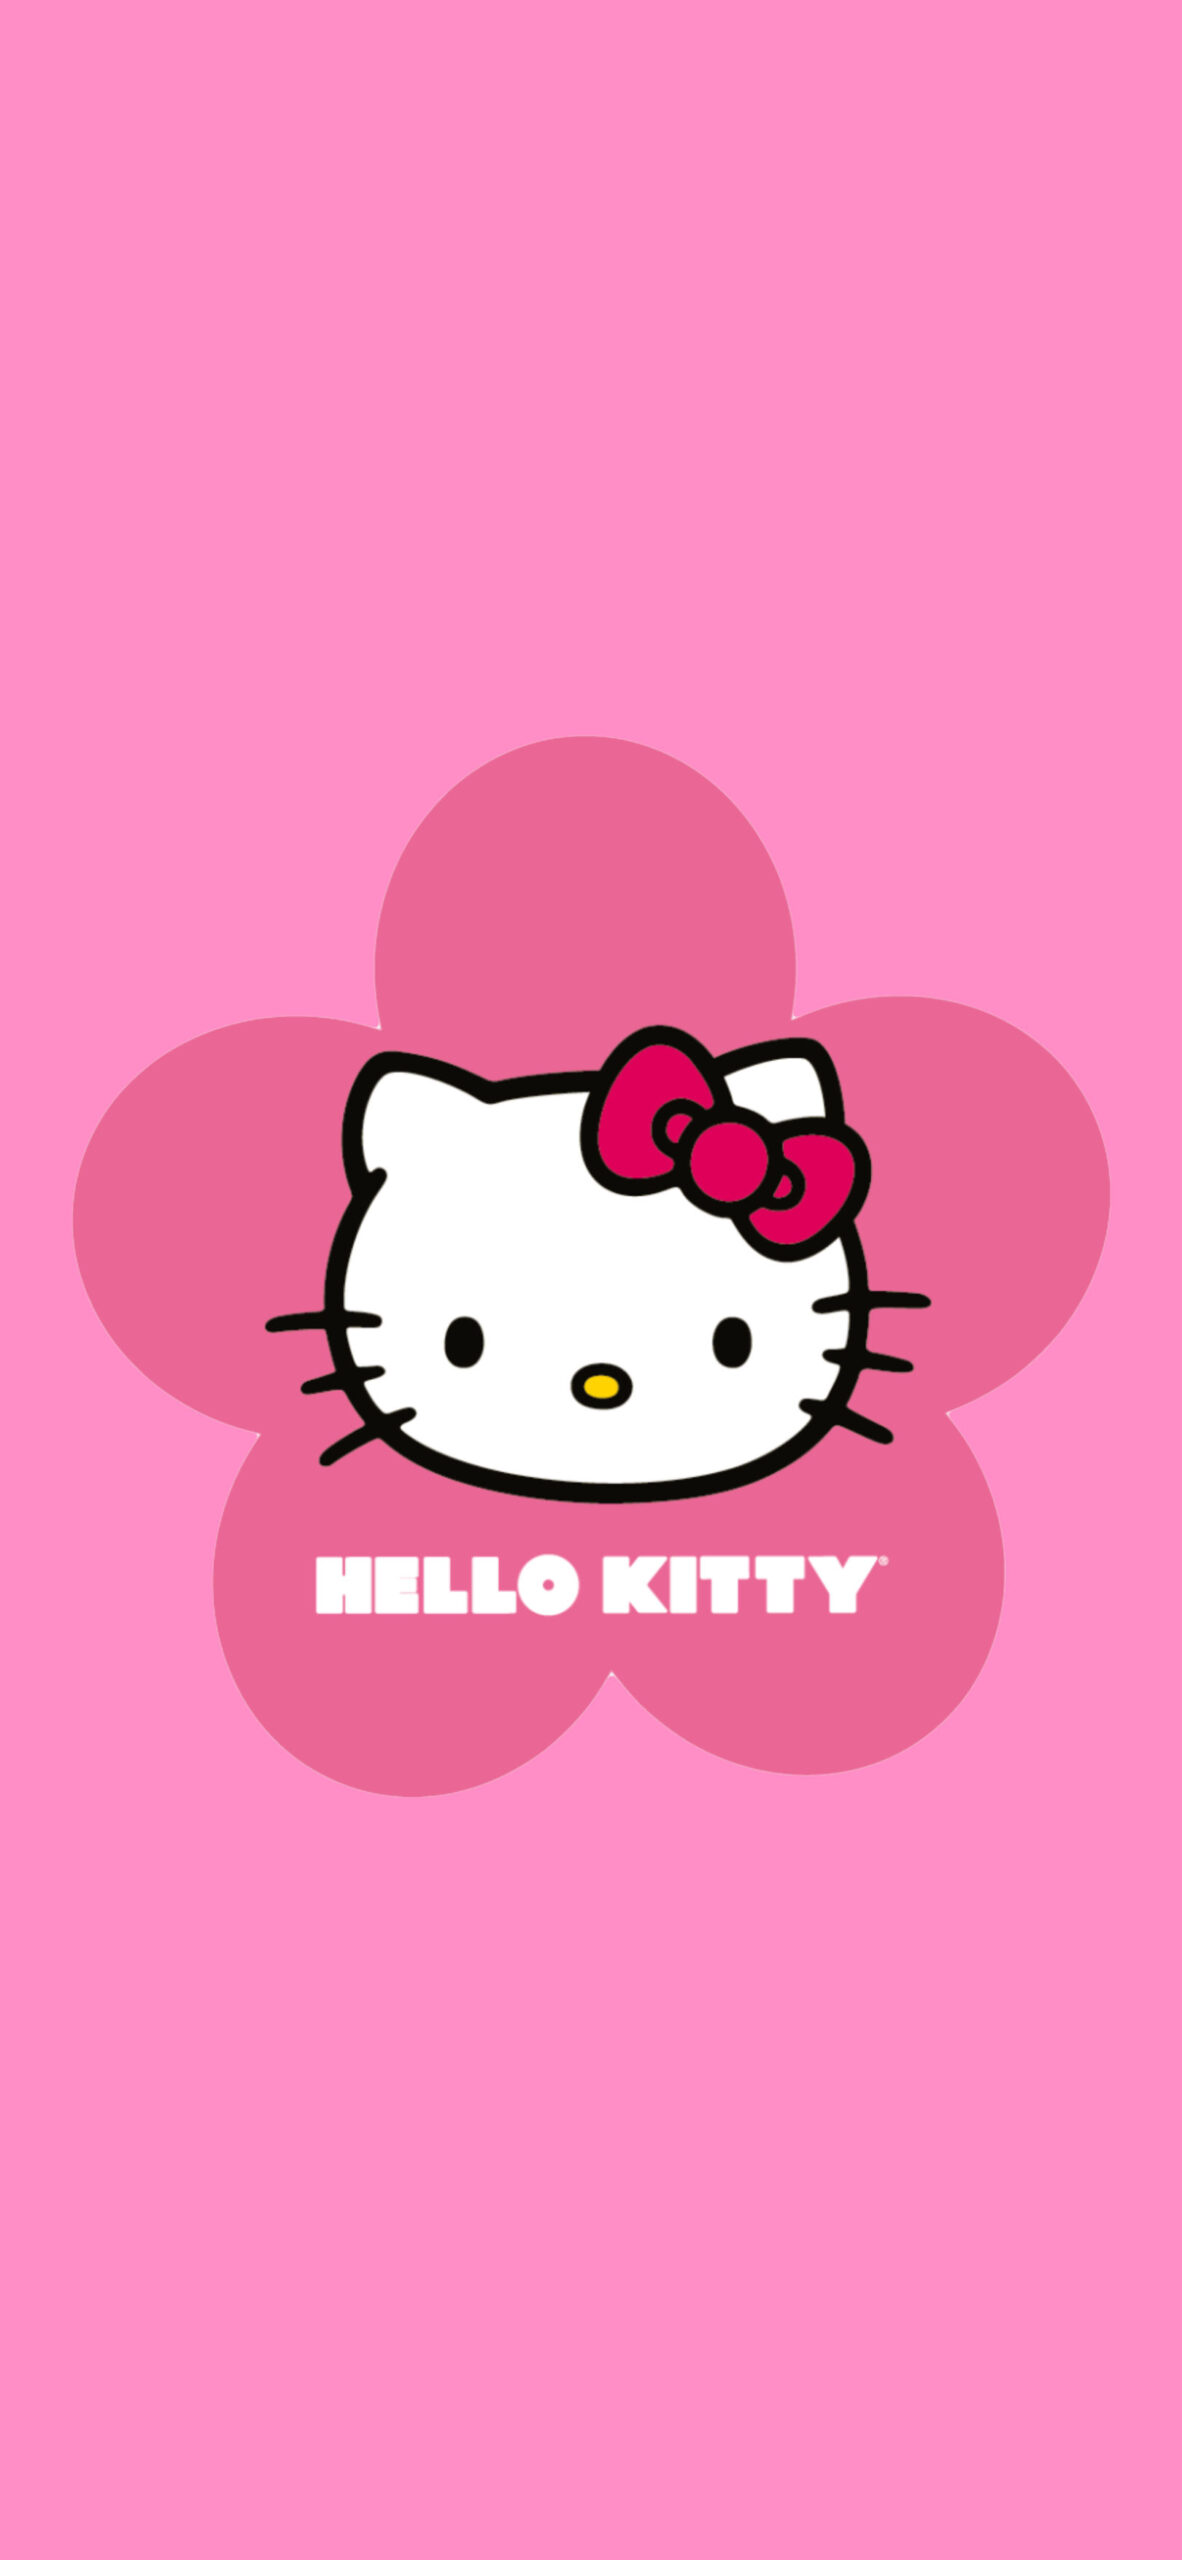 70 Ảnh Hello Kitty Đẹp Cute Dễ Thương Đáng Yêu Nhất